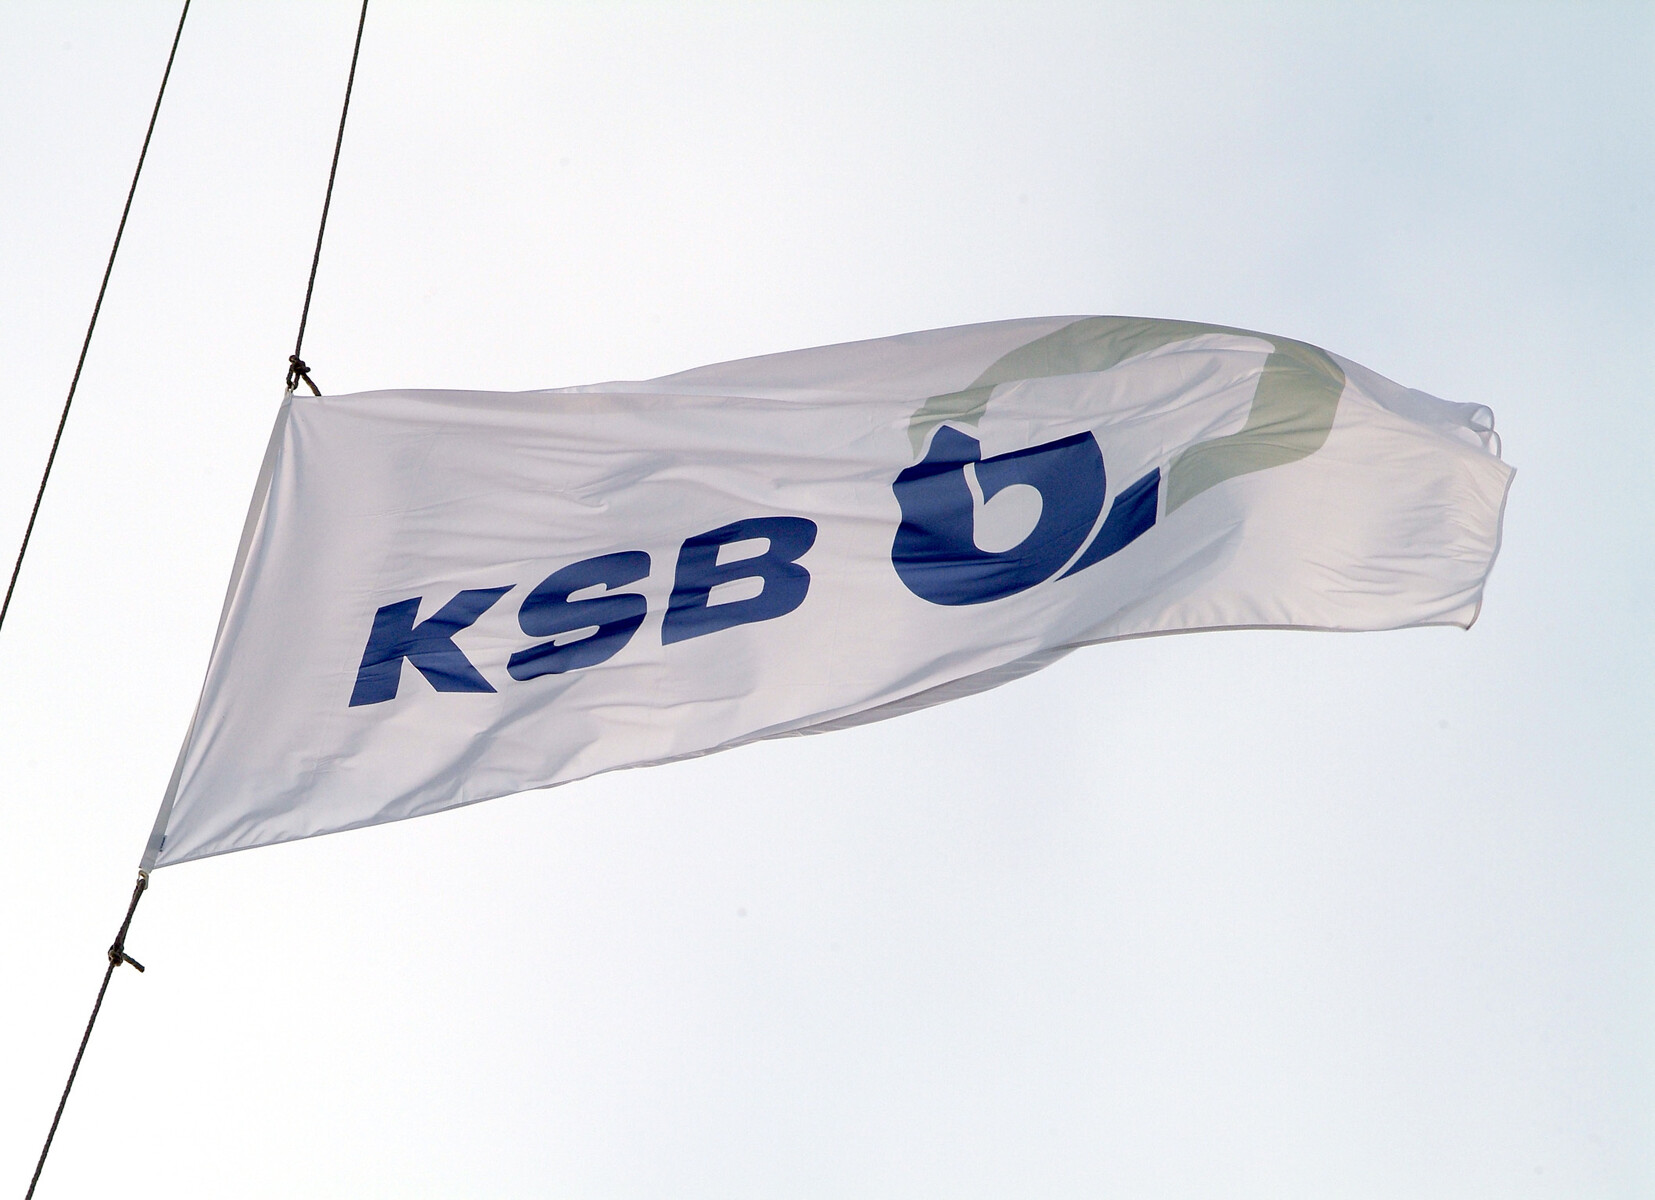 KSB flag